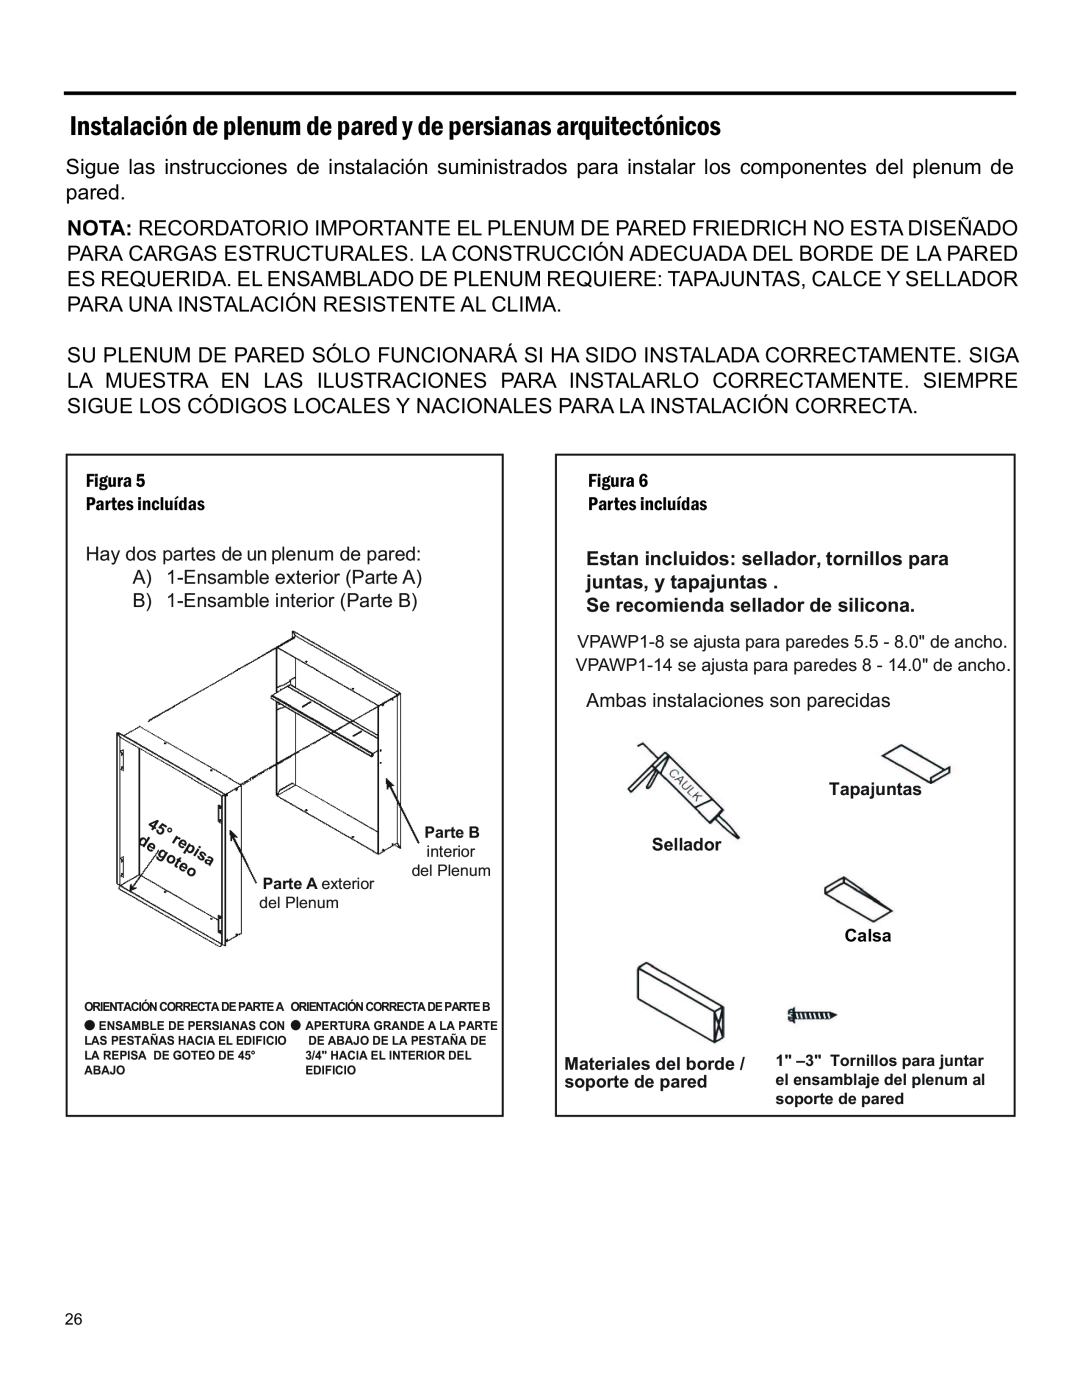 Friedrich 920-075-13 (1-11) operation manual repisa, goteo, Se recomienda sellador de silicona 